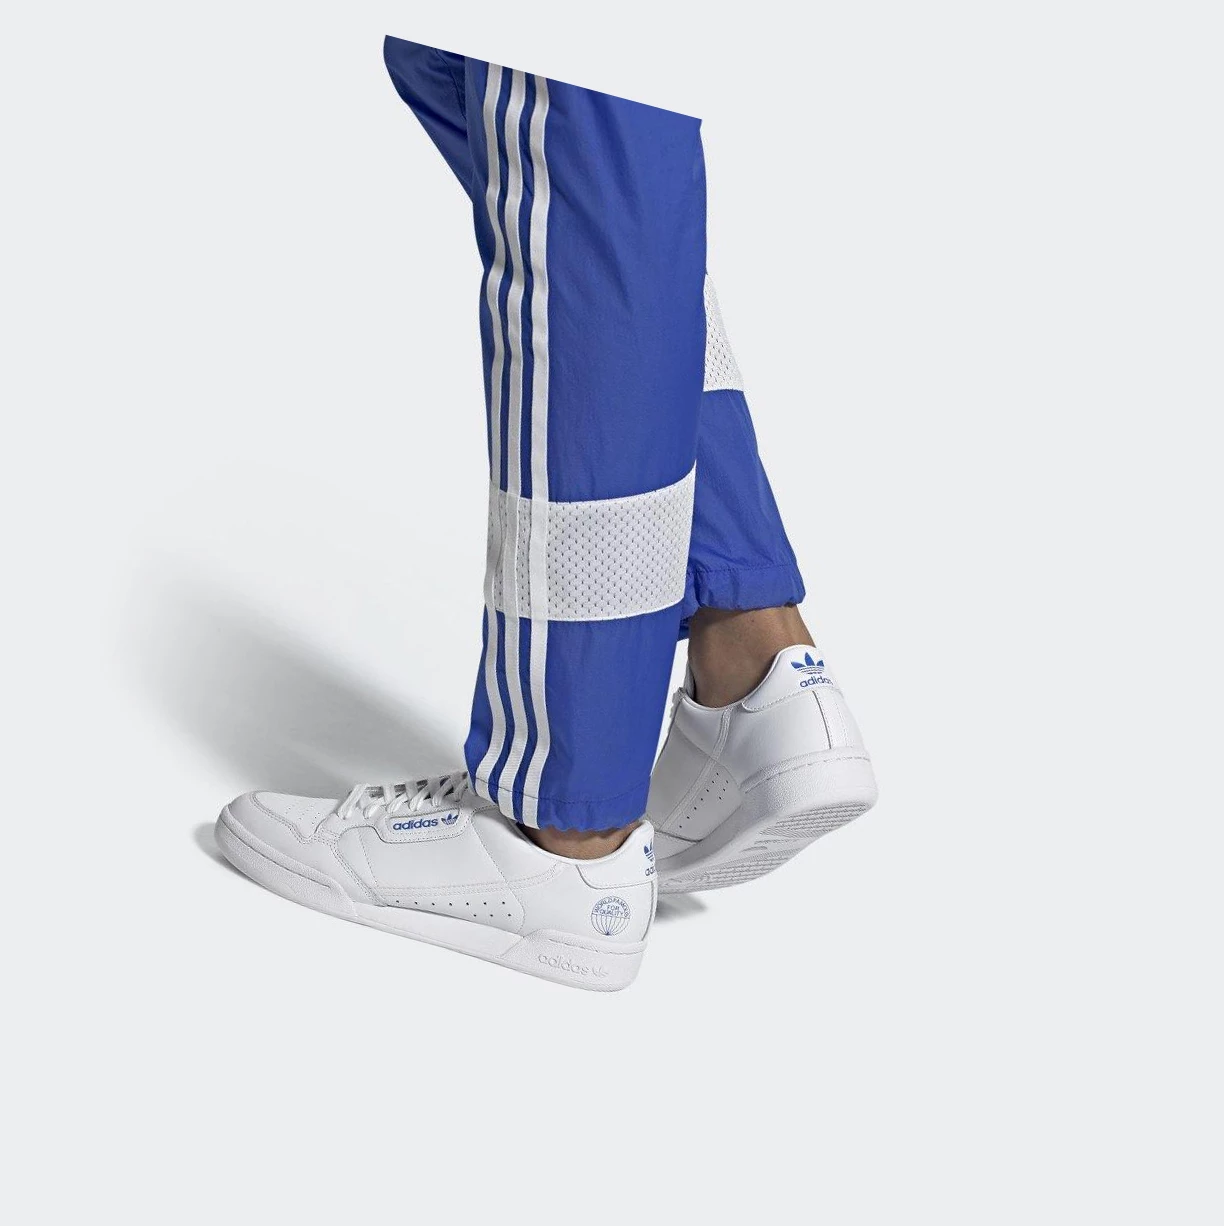 Originálne Topánky Adidas Continental 80 Damske Biele | 827SKHRVUPI